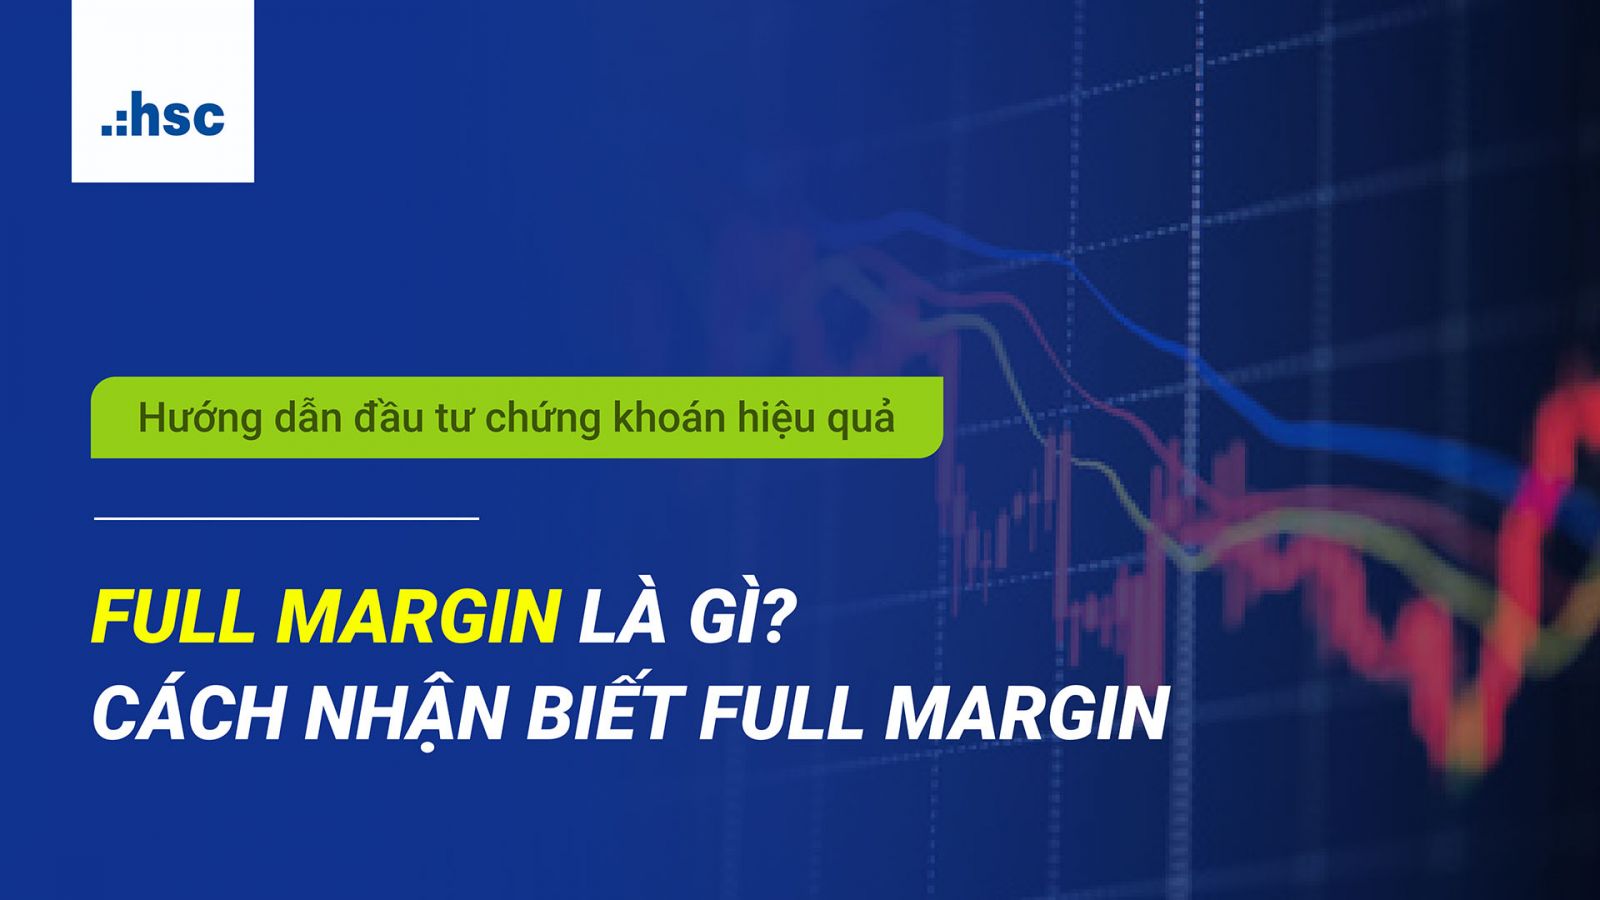  Full margin là gì? Cách nhận biết trạng thái full margin